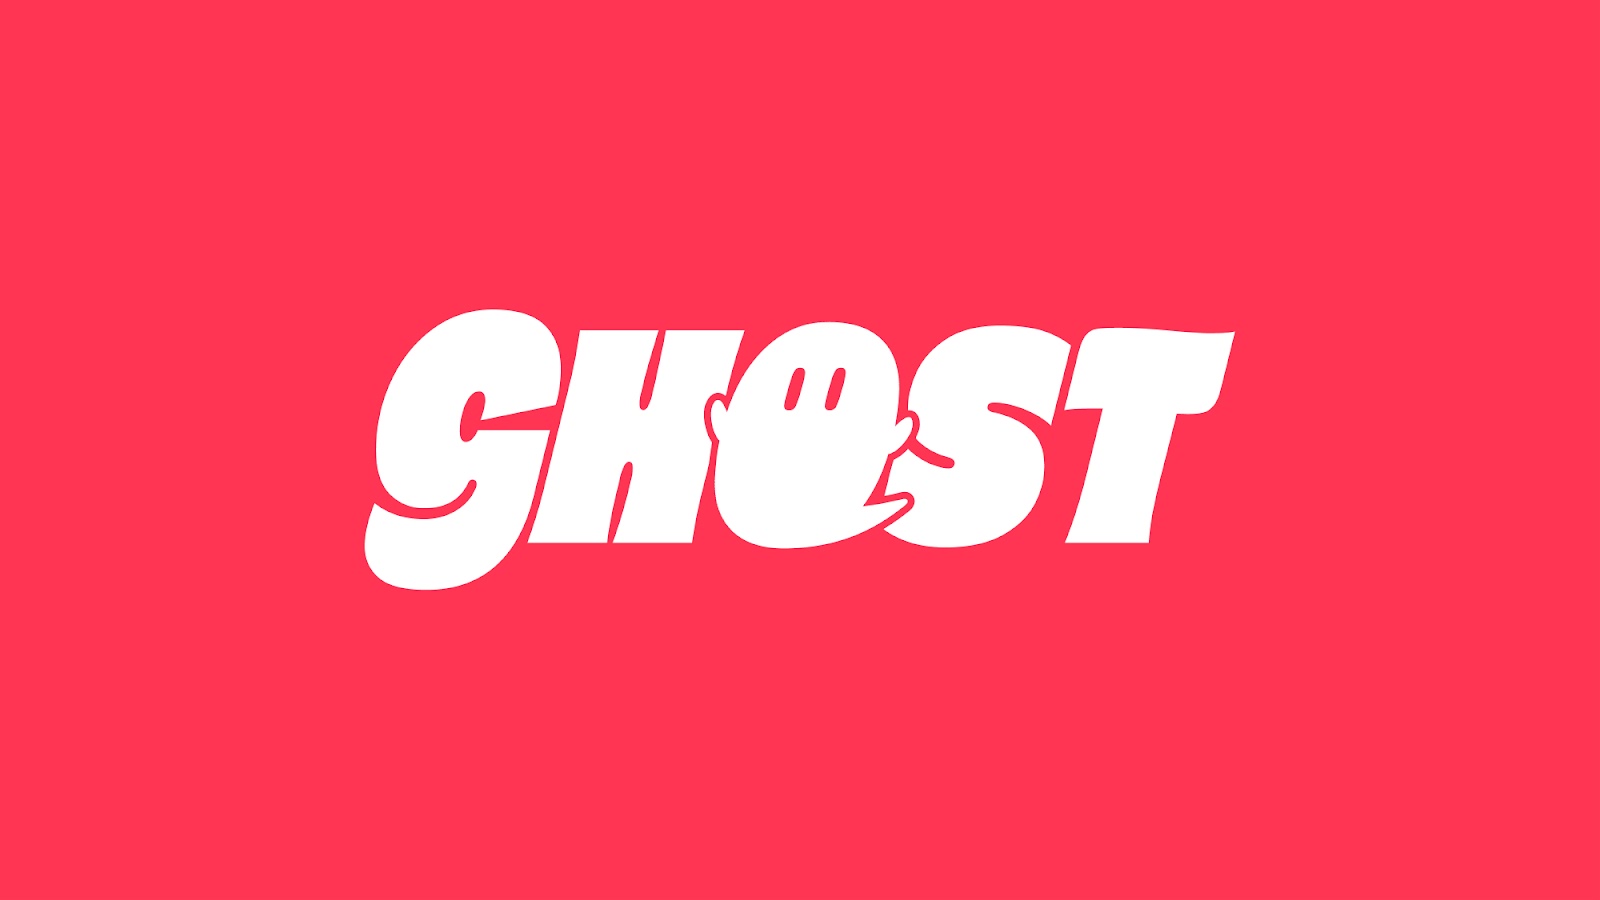 应用信息平台标识设计作品,Ghost品牌识别设计。